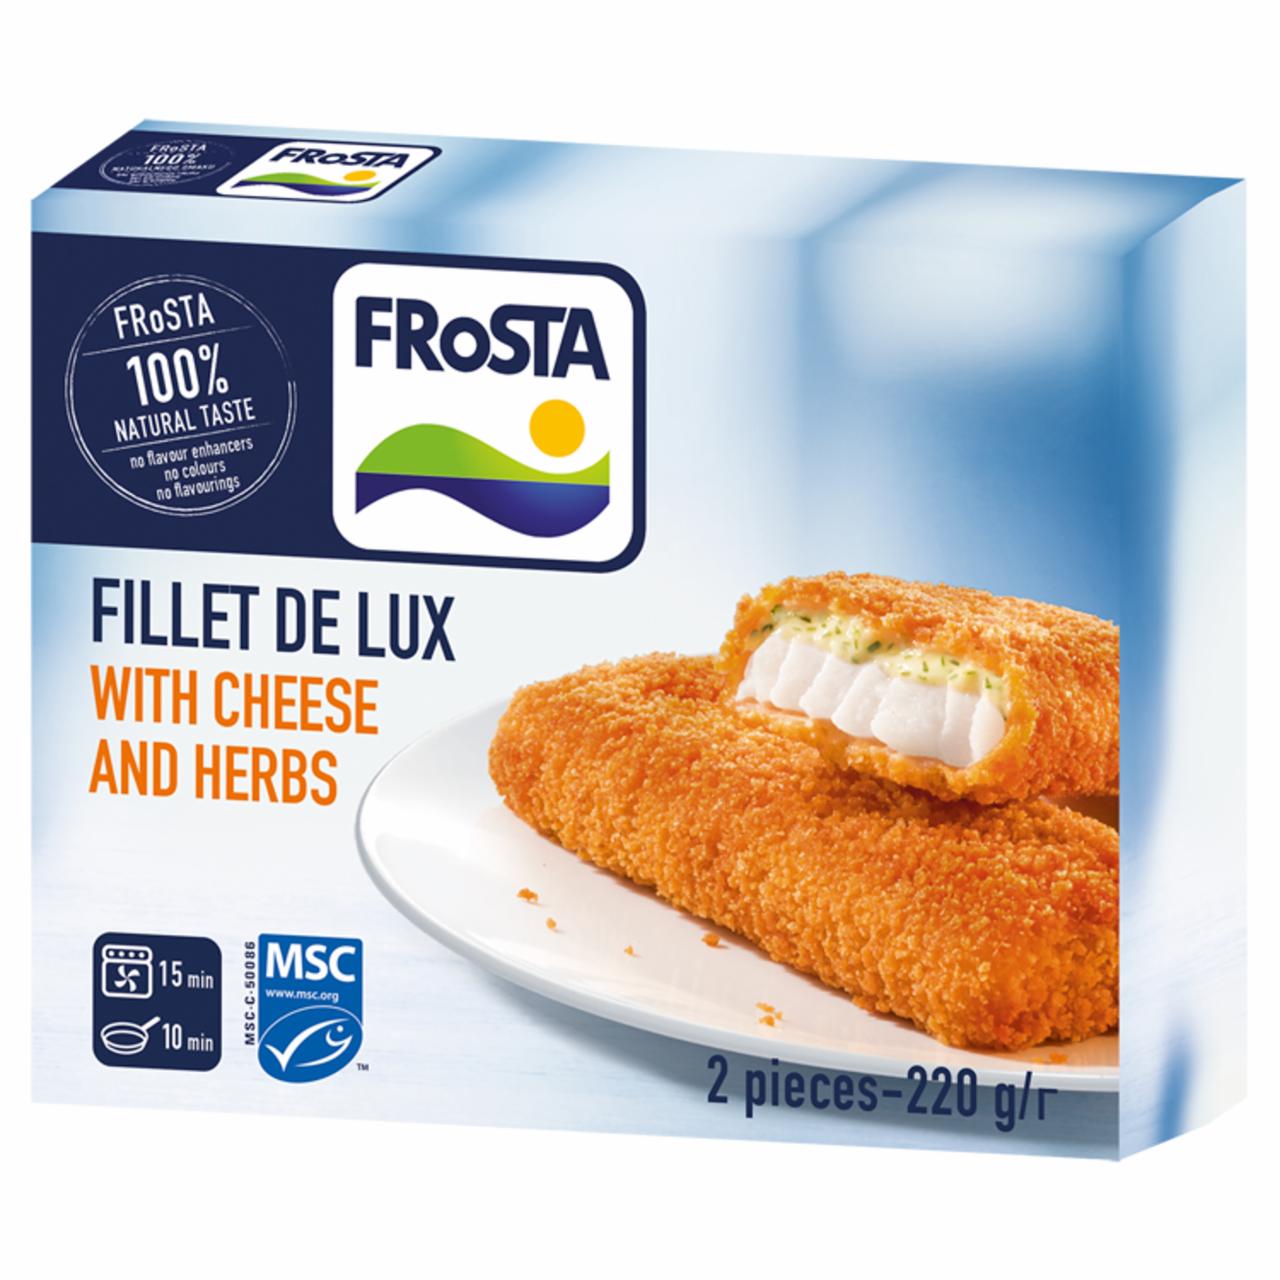 Képek - FRoSTA gyorsfagyasztott Filé de Lux halfilé sajtszósszal 220 g